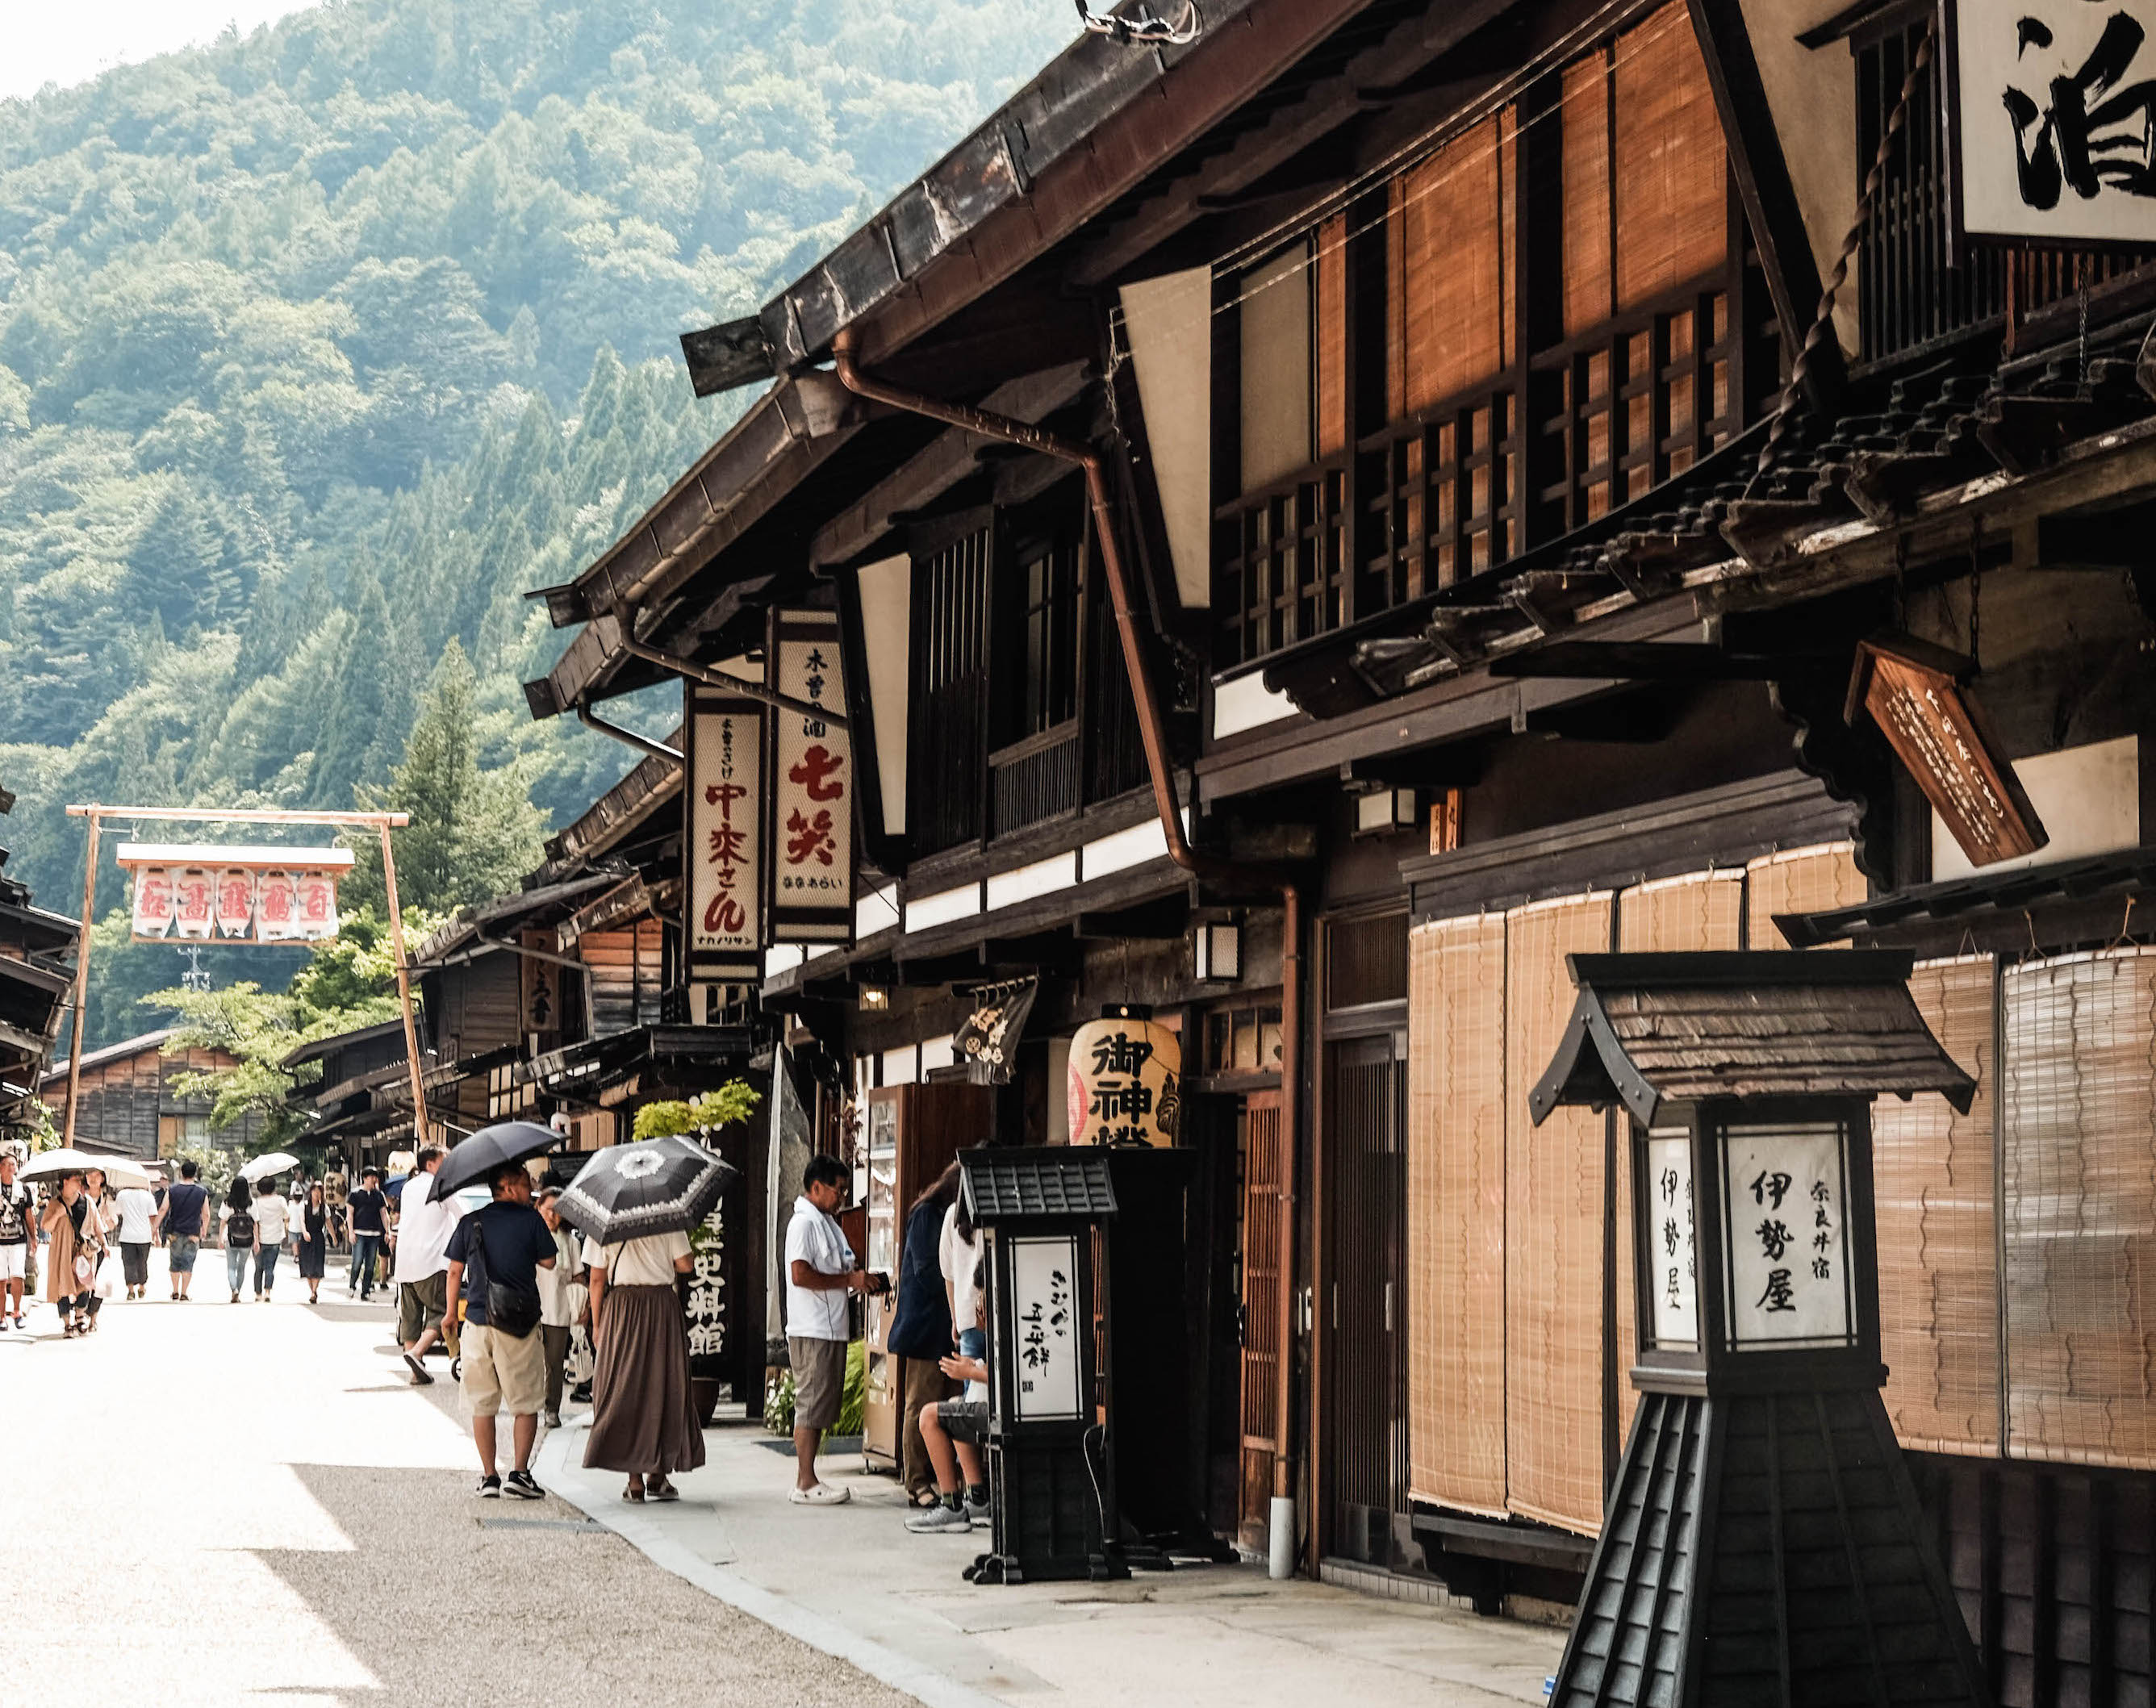 タイムスリップ気分で歩きたい 日本のレトロな町並み